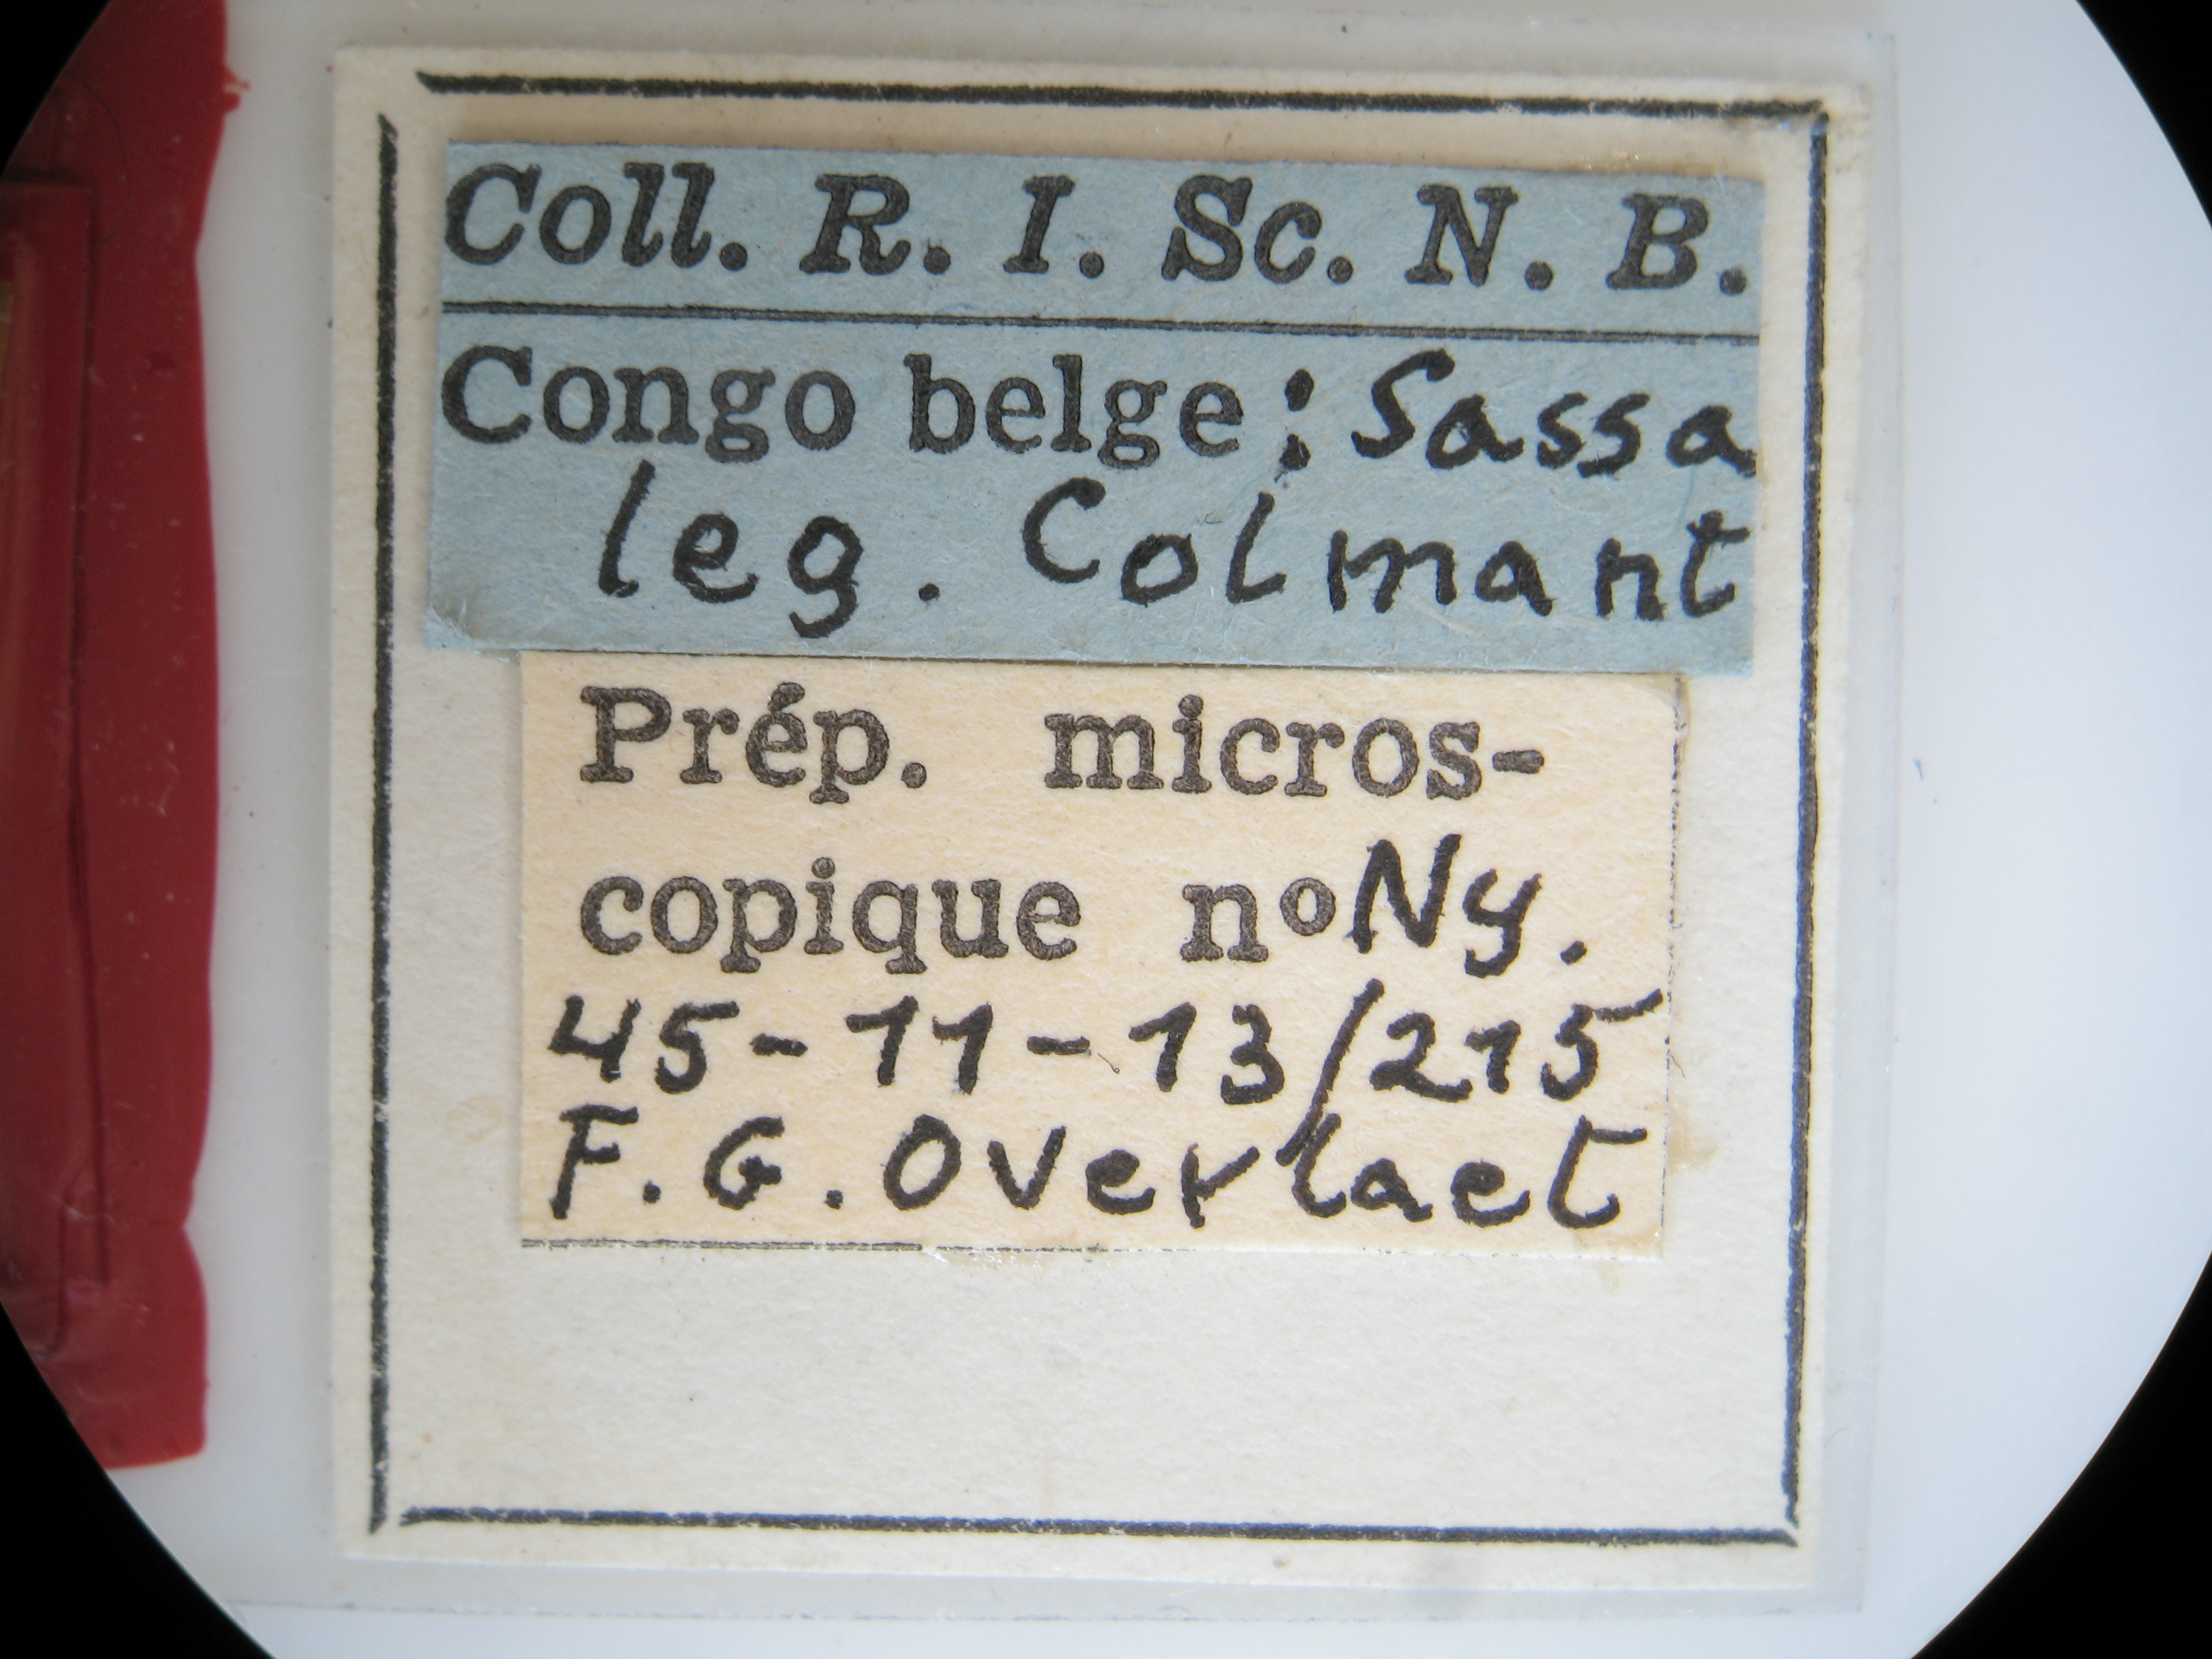 Cymothoe colmanti pt M Lb.jpg